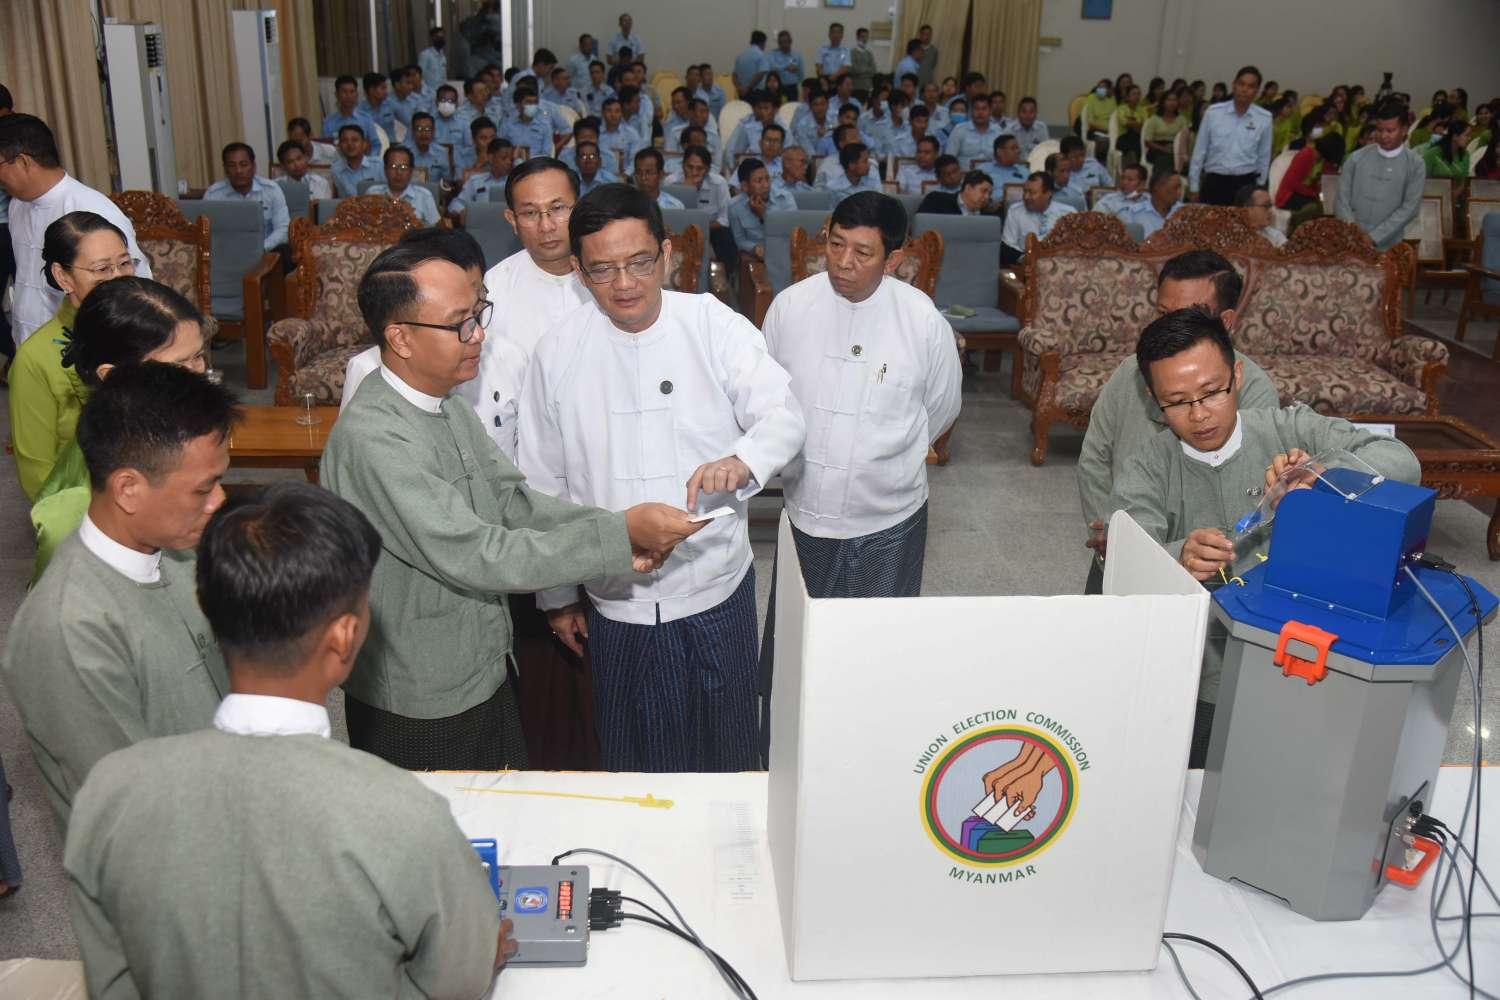 သြဂုတ် ၁၇ ရက်က မြန်မာအီလက်ထရွန်နစ် မဲပေးစက်နှင့်စပ်လျဉ်းပြီး ရှင်းလင်းပြသခြင်းနှင့် လက်တွေ့သရုပ်ပြ စမ်းသပ်မဲပေးခြင်းကို စီးပွားရေးနှင့် ကူးသန်းရောင်းဝယ်ရေးဝန်ကြီးဌာနနှင့် ပို့ဆောင်ရေးနှင့် ဆက်သွယ်ရေးဝန်ကြီးဌာန၌ ကျင်းပစဉ်